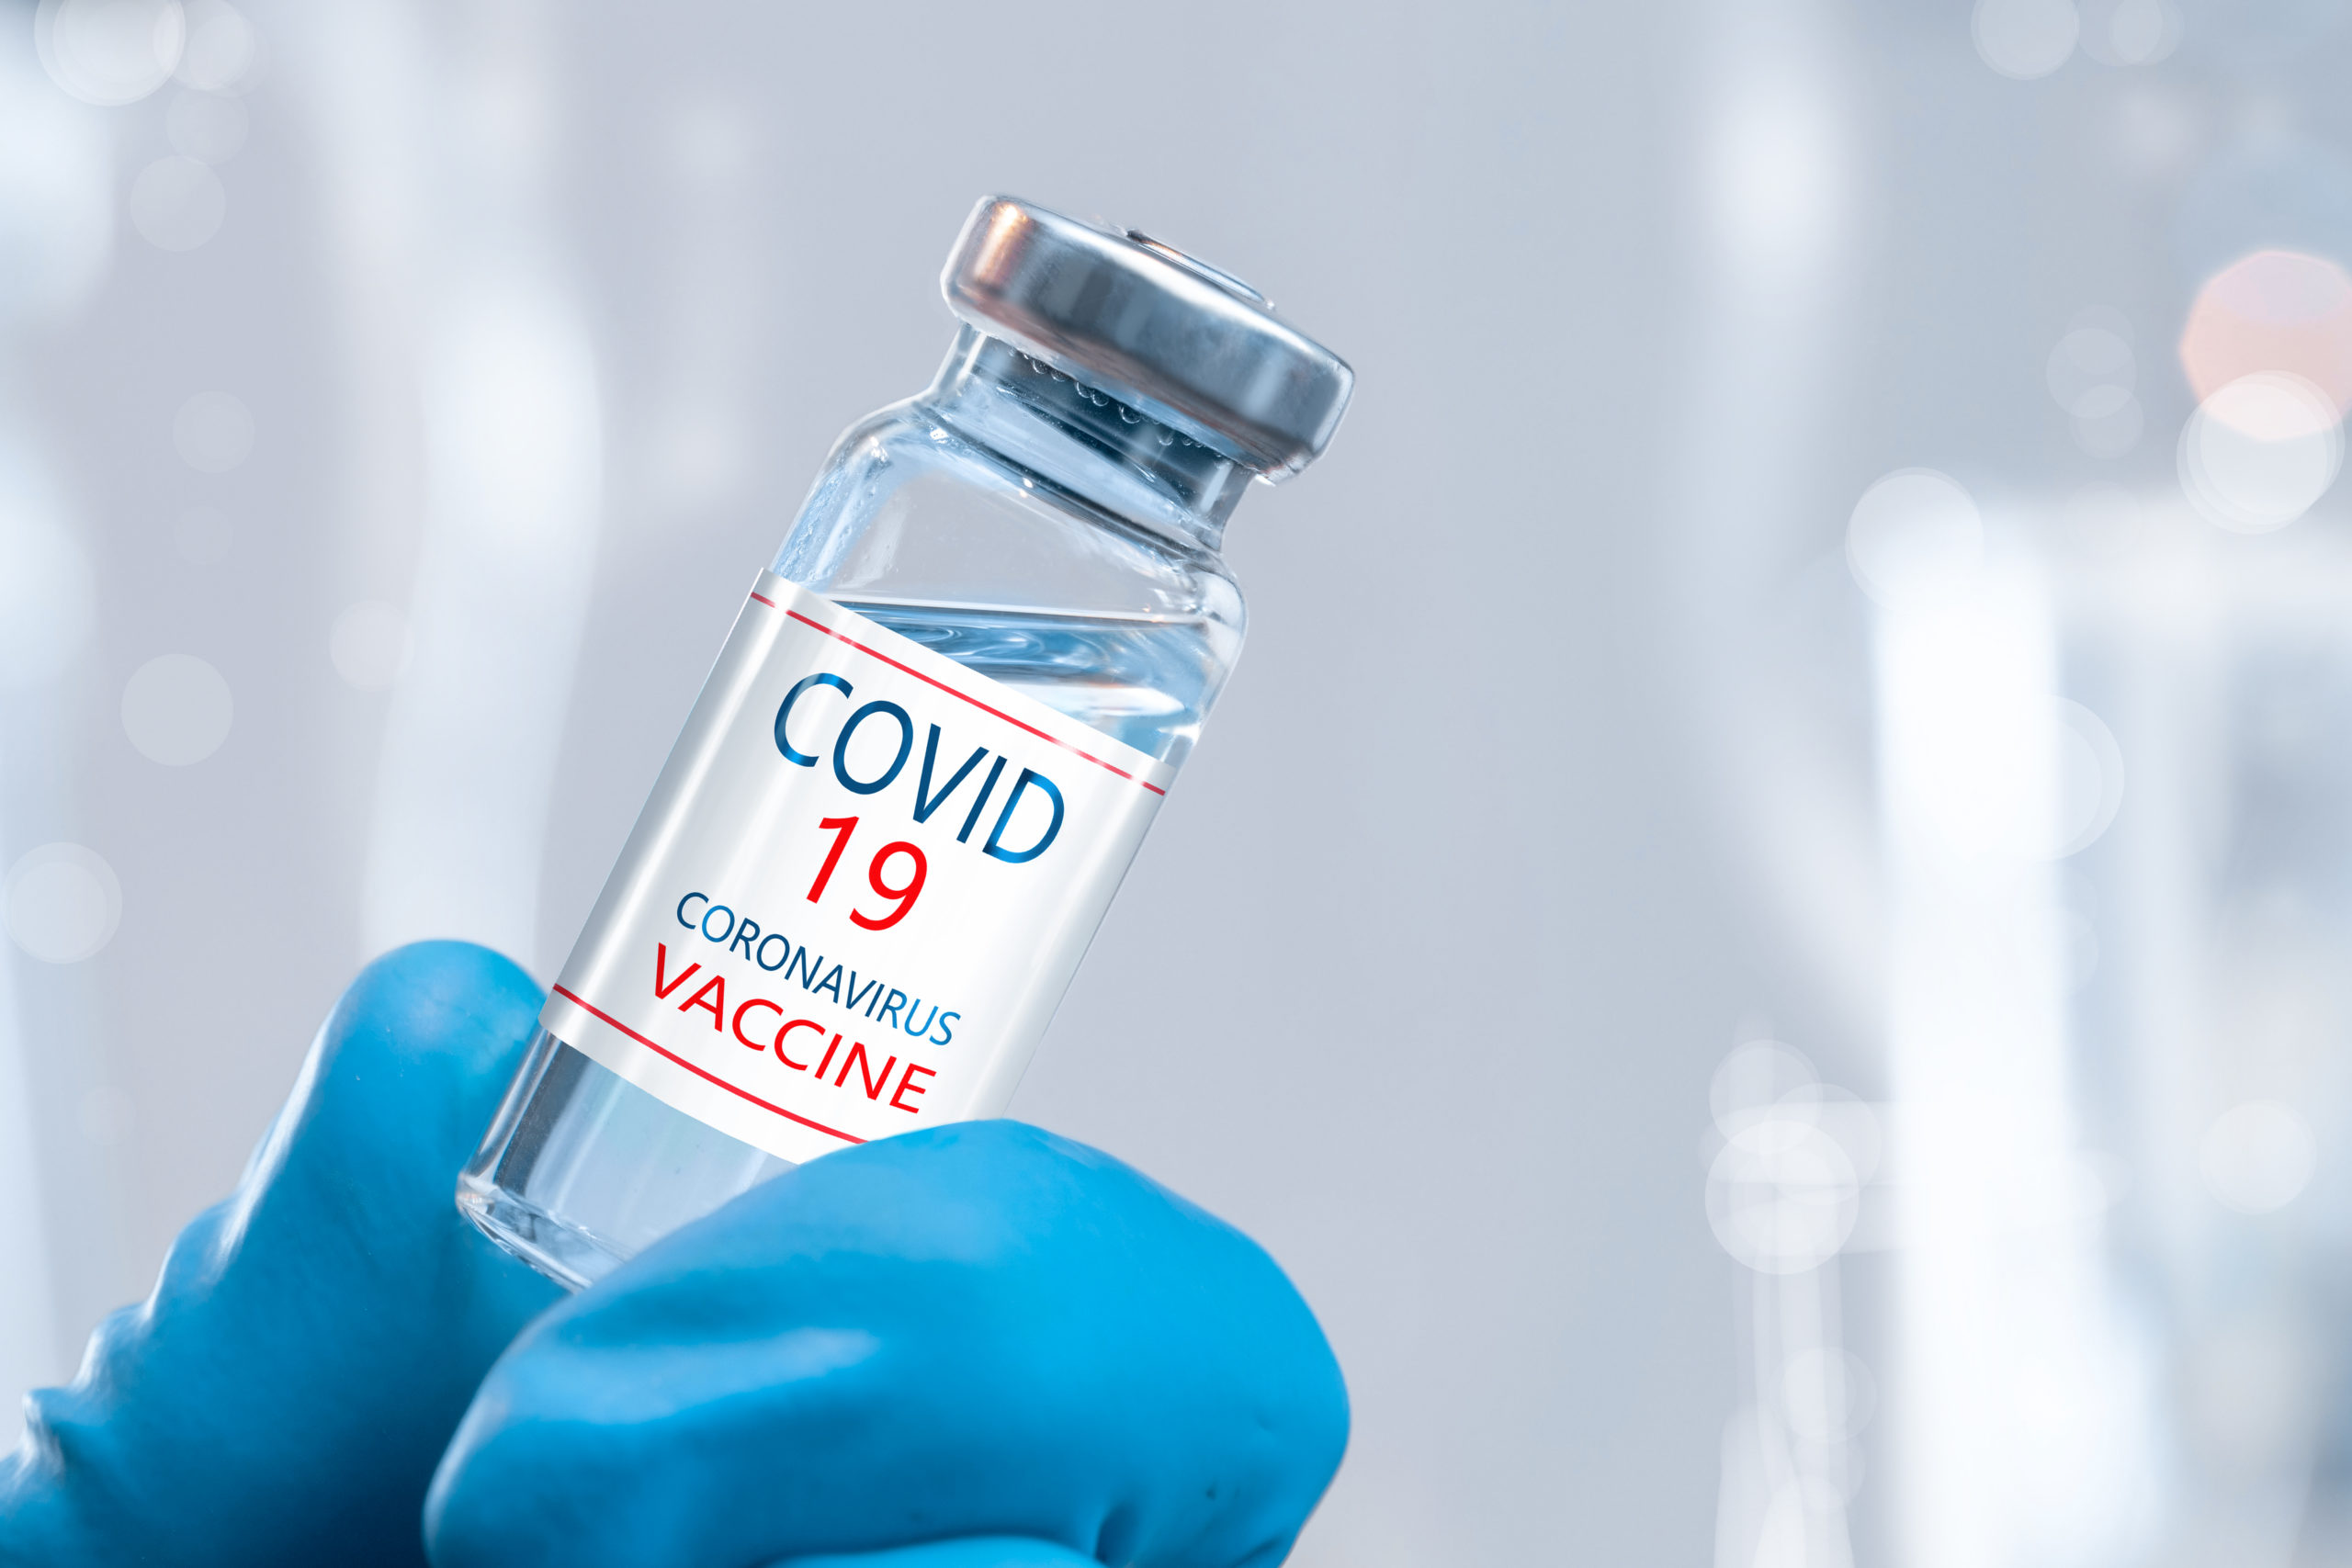 COVID vaccine image